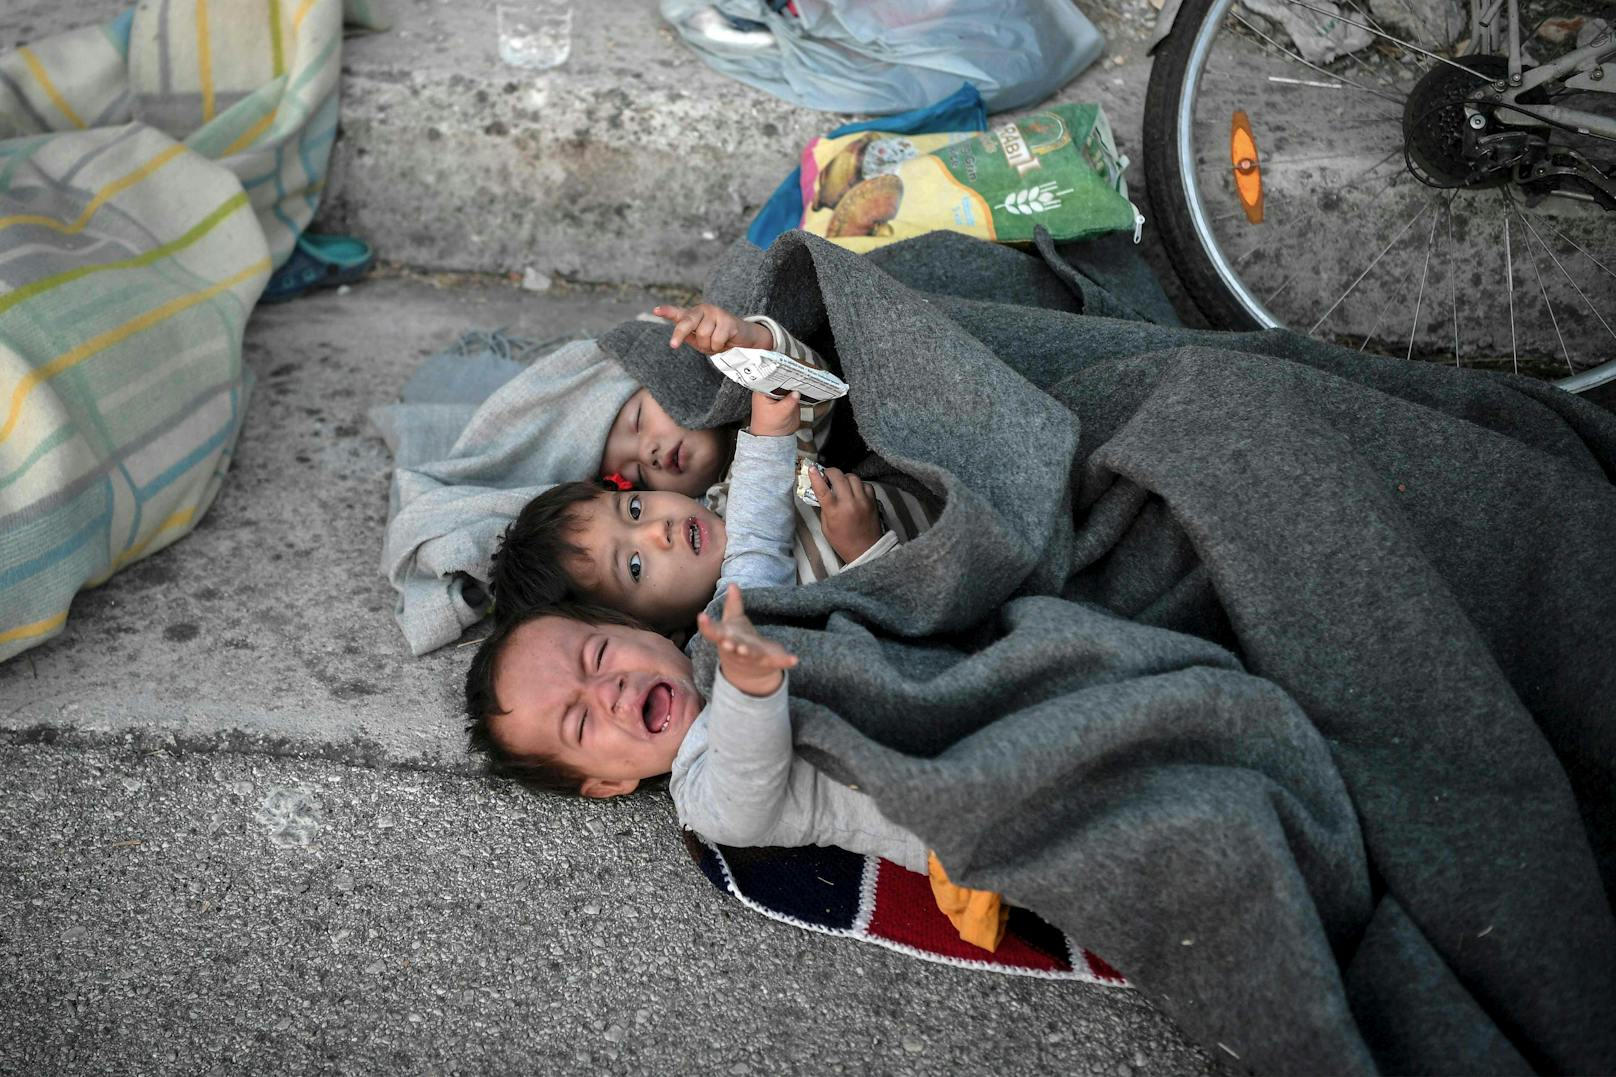 Auch Tage nach der Brandkatastrophe im Flüchtlingslager Moria haben viele der Menschen dort weder Nahrung noch ein Dach über dem Kopf (12. September 2020)